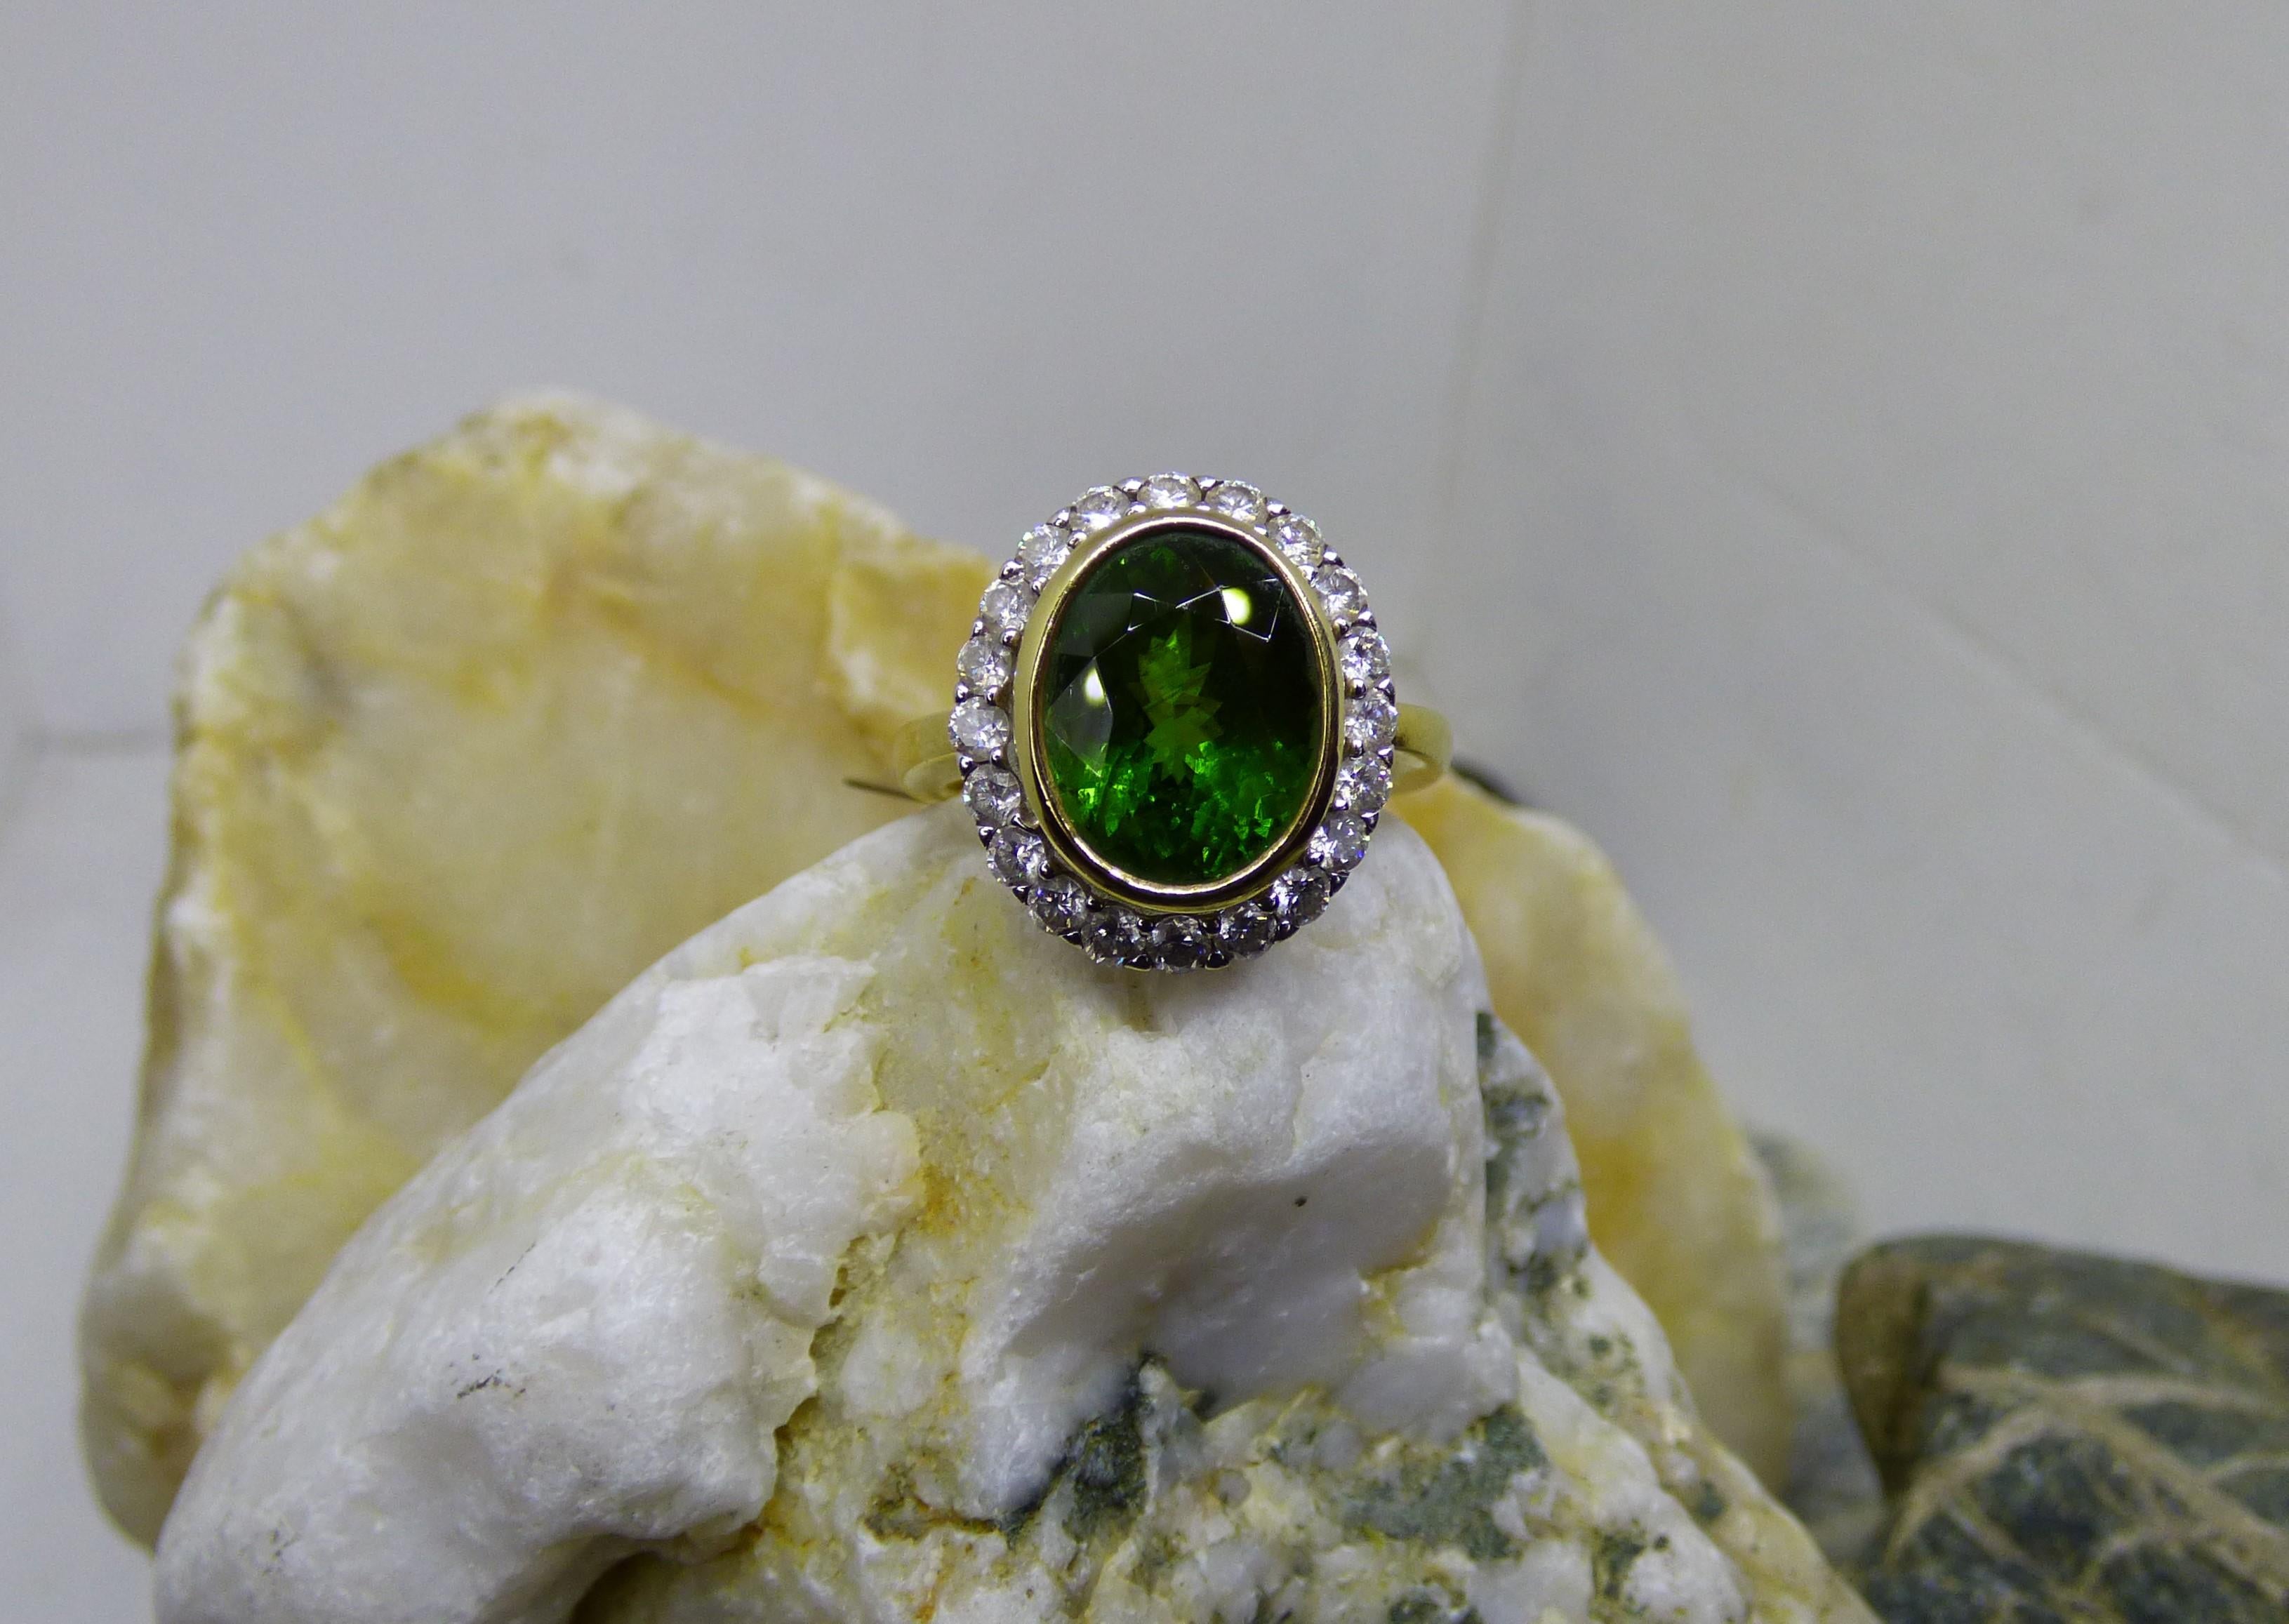 Ein grüner Turmalin, der hell und farbenfroh leuchtet.  Der facettierte ovale Turmalin hat 5,77ct. Der Turmalin ist von 20 Diamanten mit einem Gesamtgewicht von 0,85ct umgeben.  Der Ring ist handgefertigt aus 18 Karat Gelbgold und die Diamanten sind